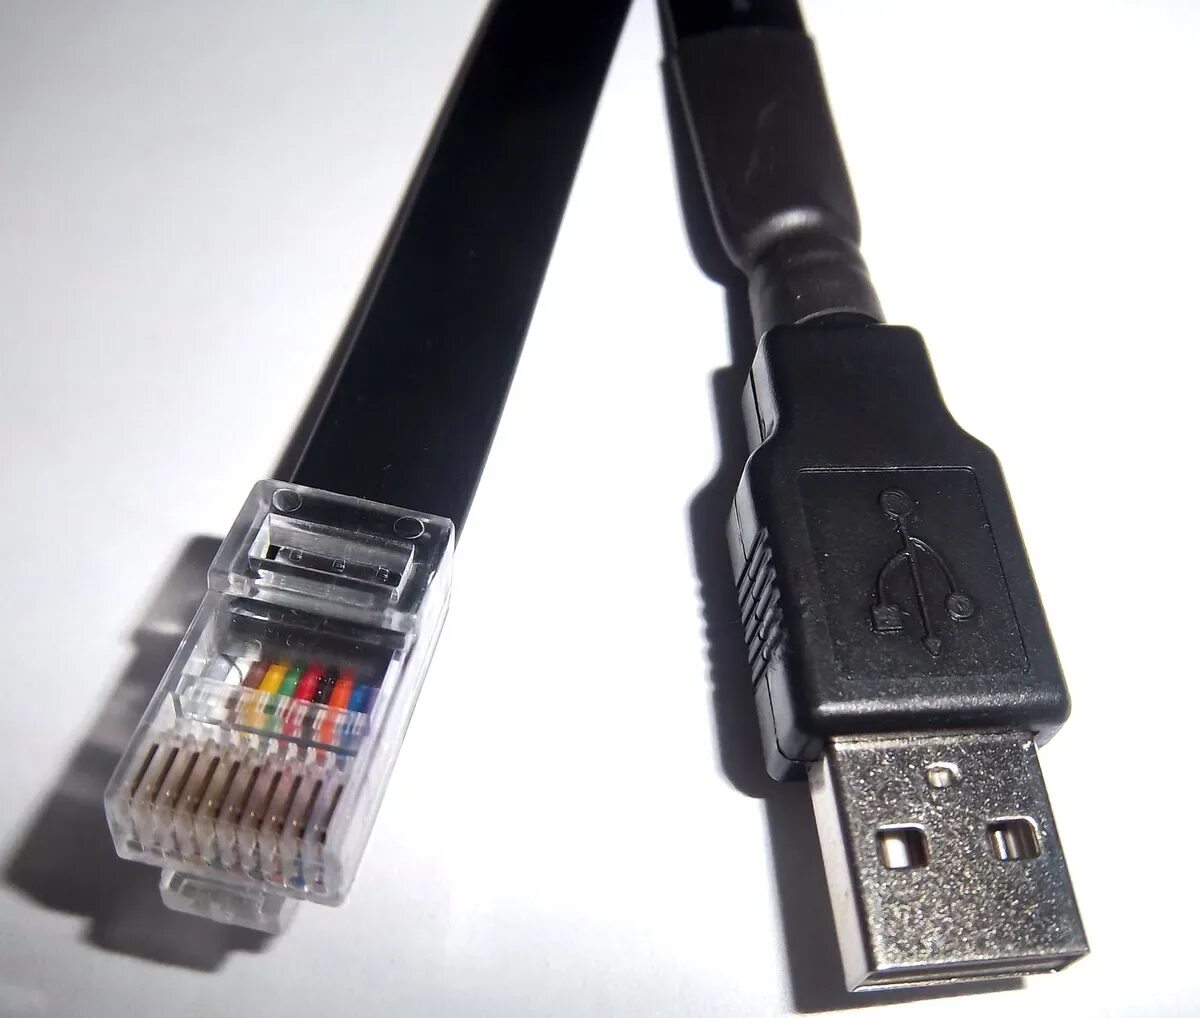 Usb rj45 купить. APC ups rj50 – USB. Rj50 USB APC. APC USB rj45 ap9827. Кабель USB rj50 для ИБП APC.